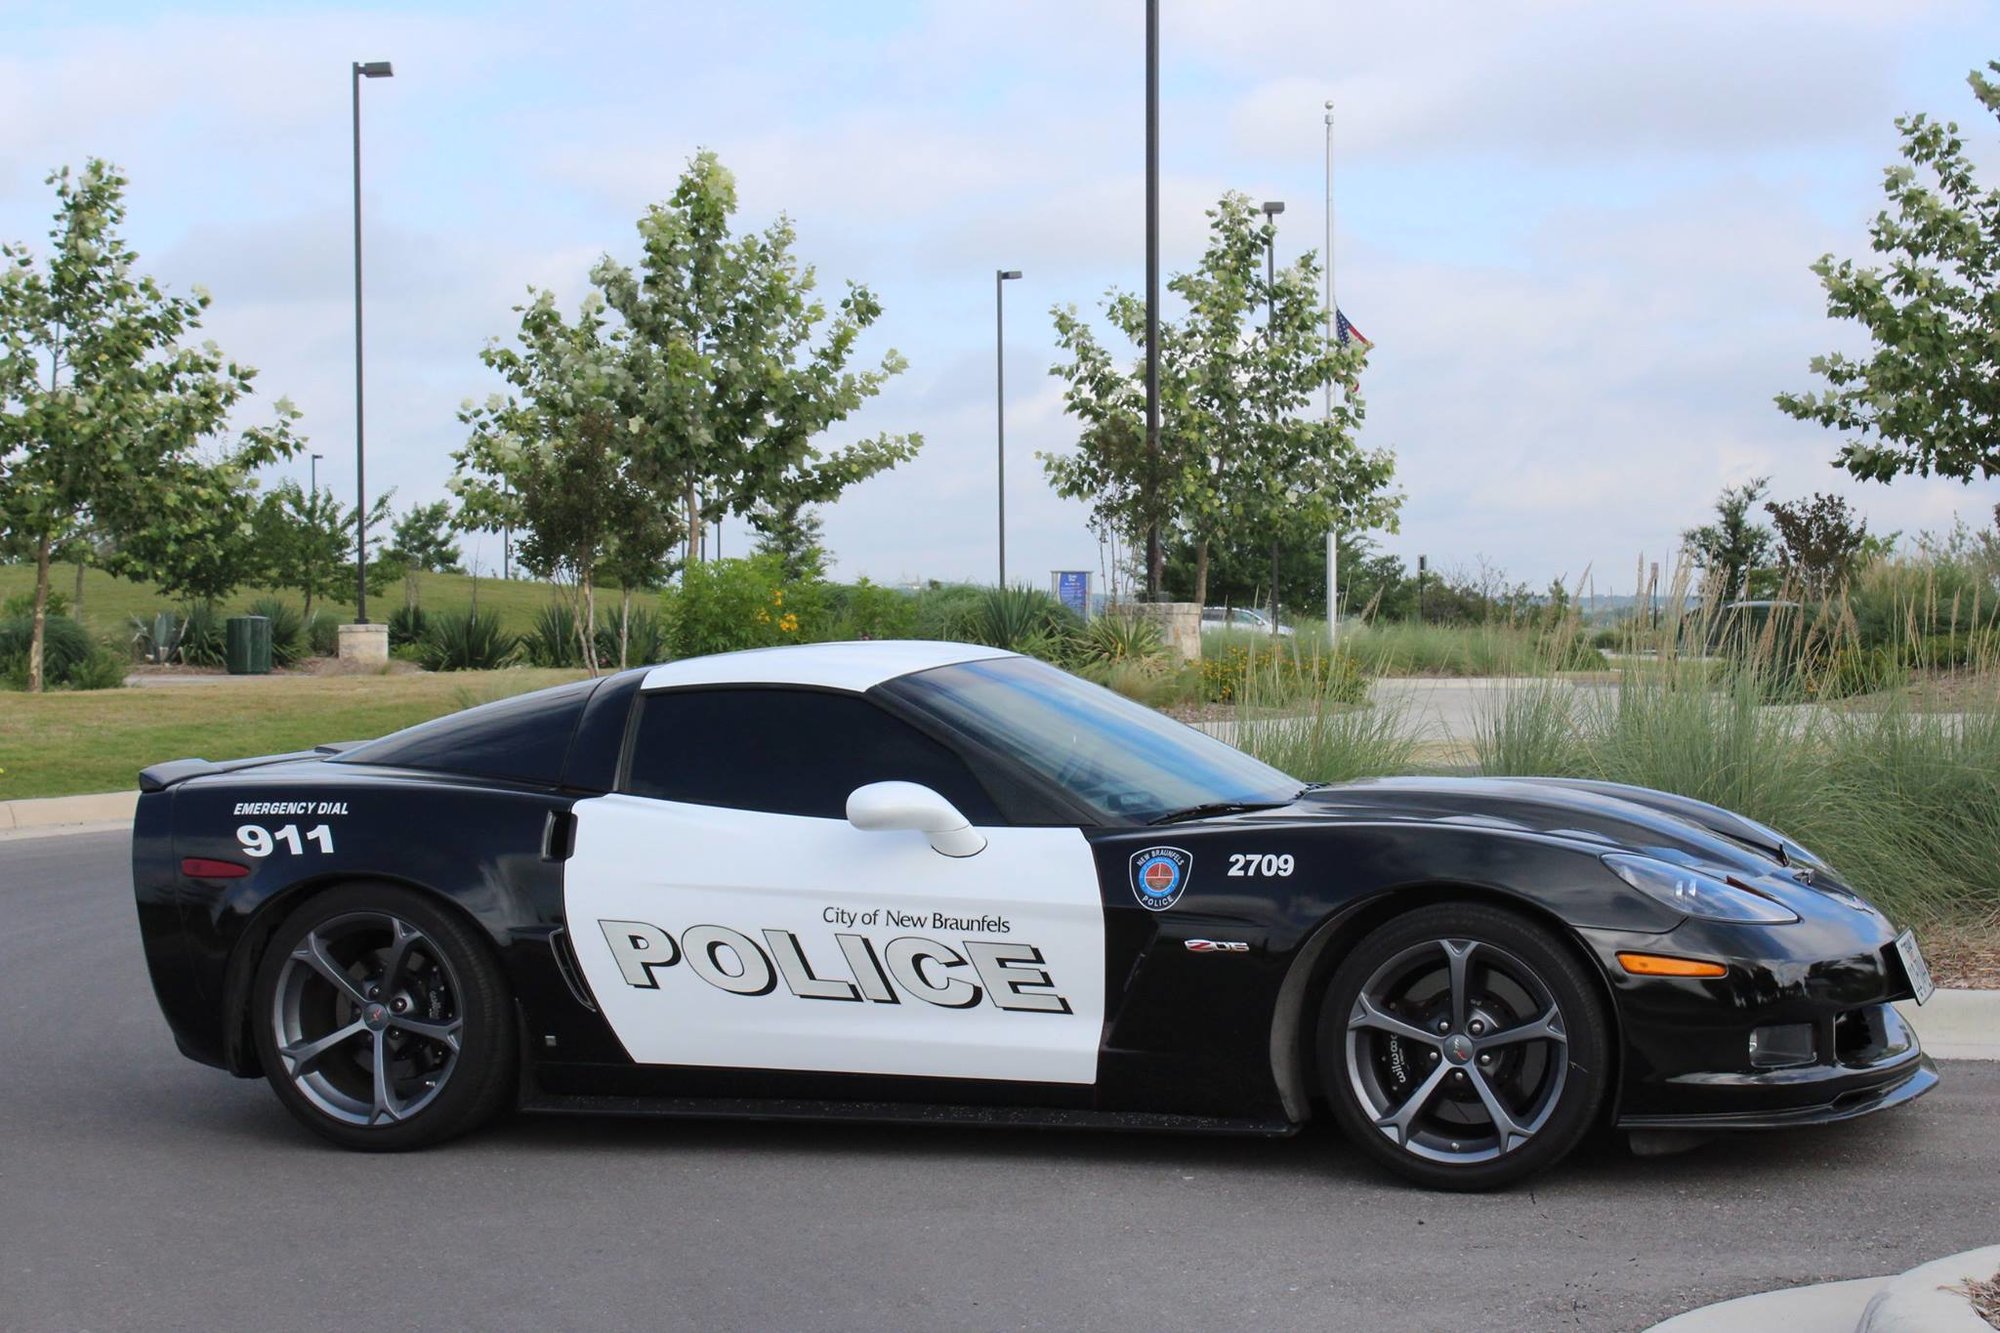 Policejní Chevrolet Corvette si brzy získal přezdívku Coptimus Prime (Ilustrační foto)